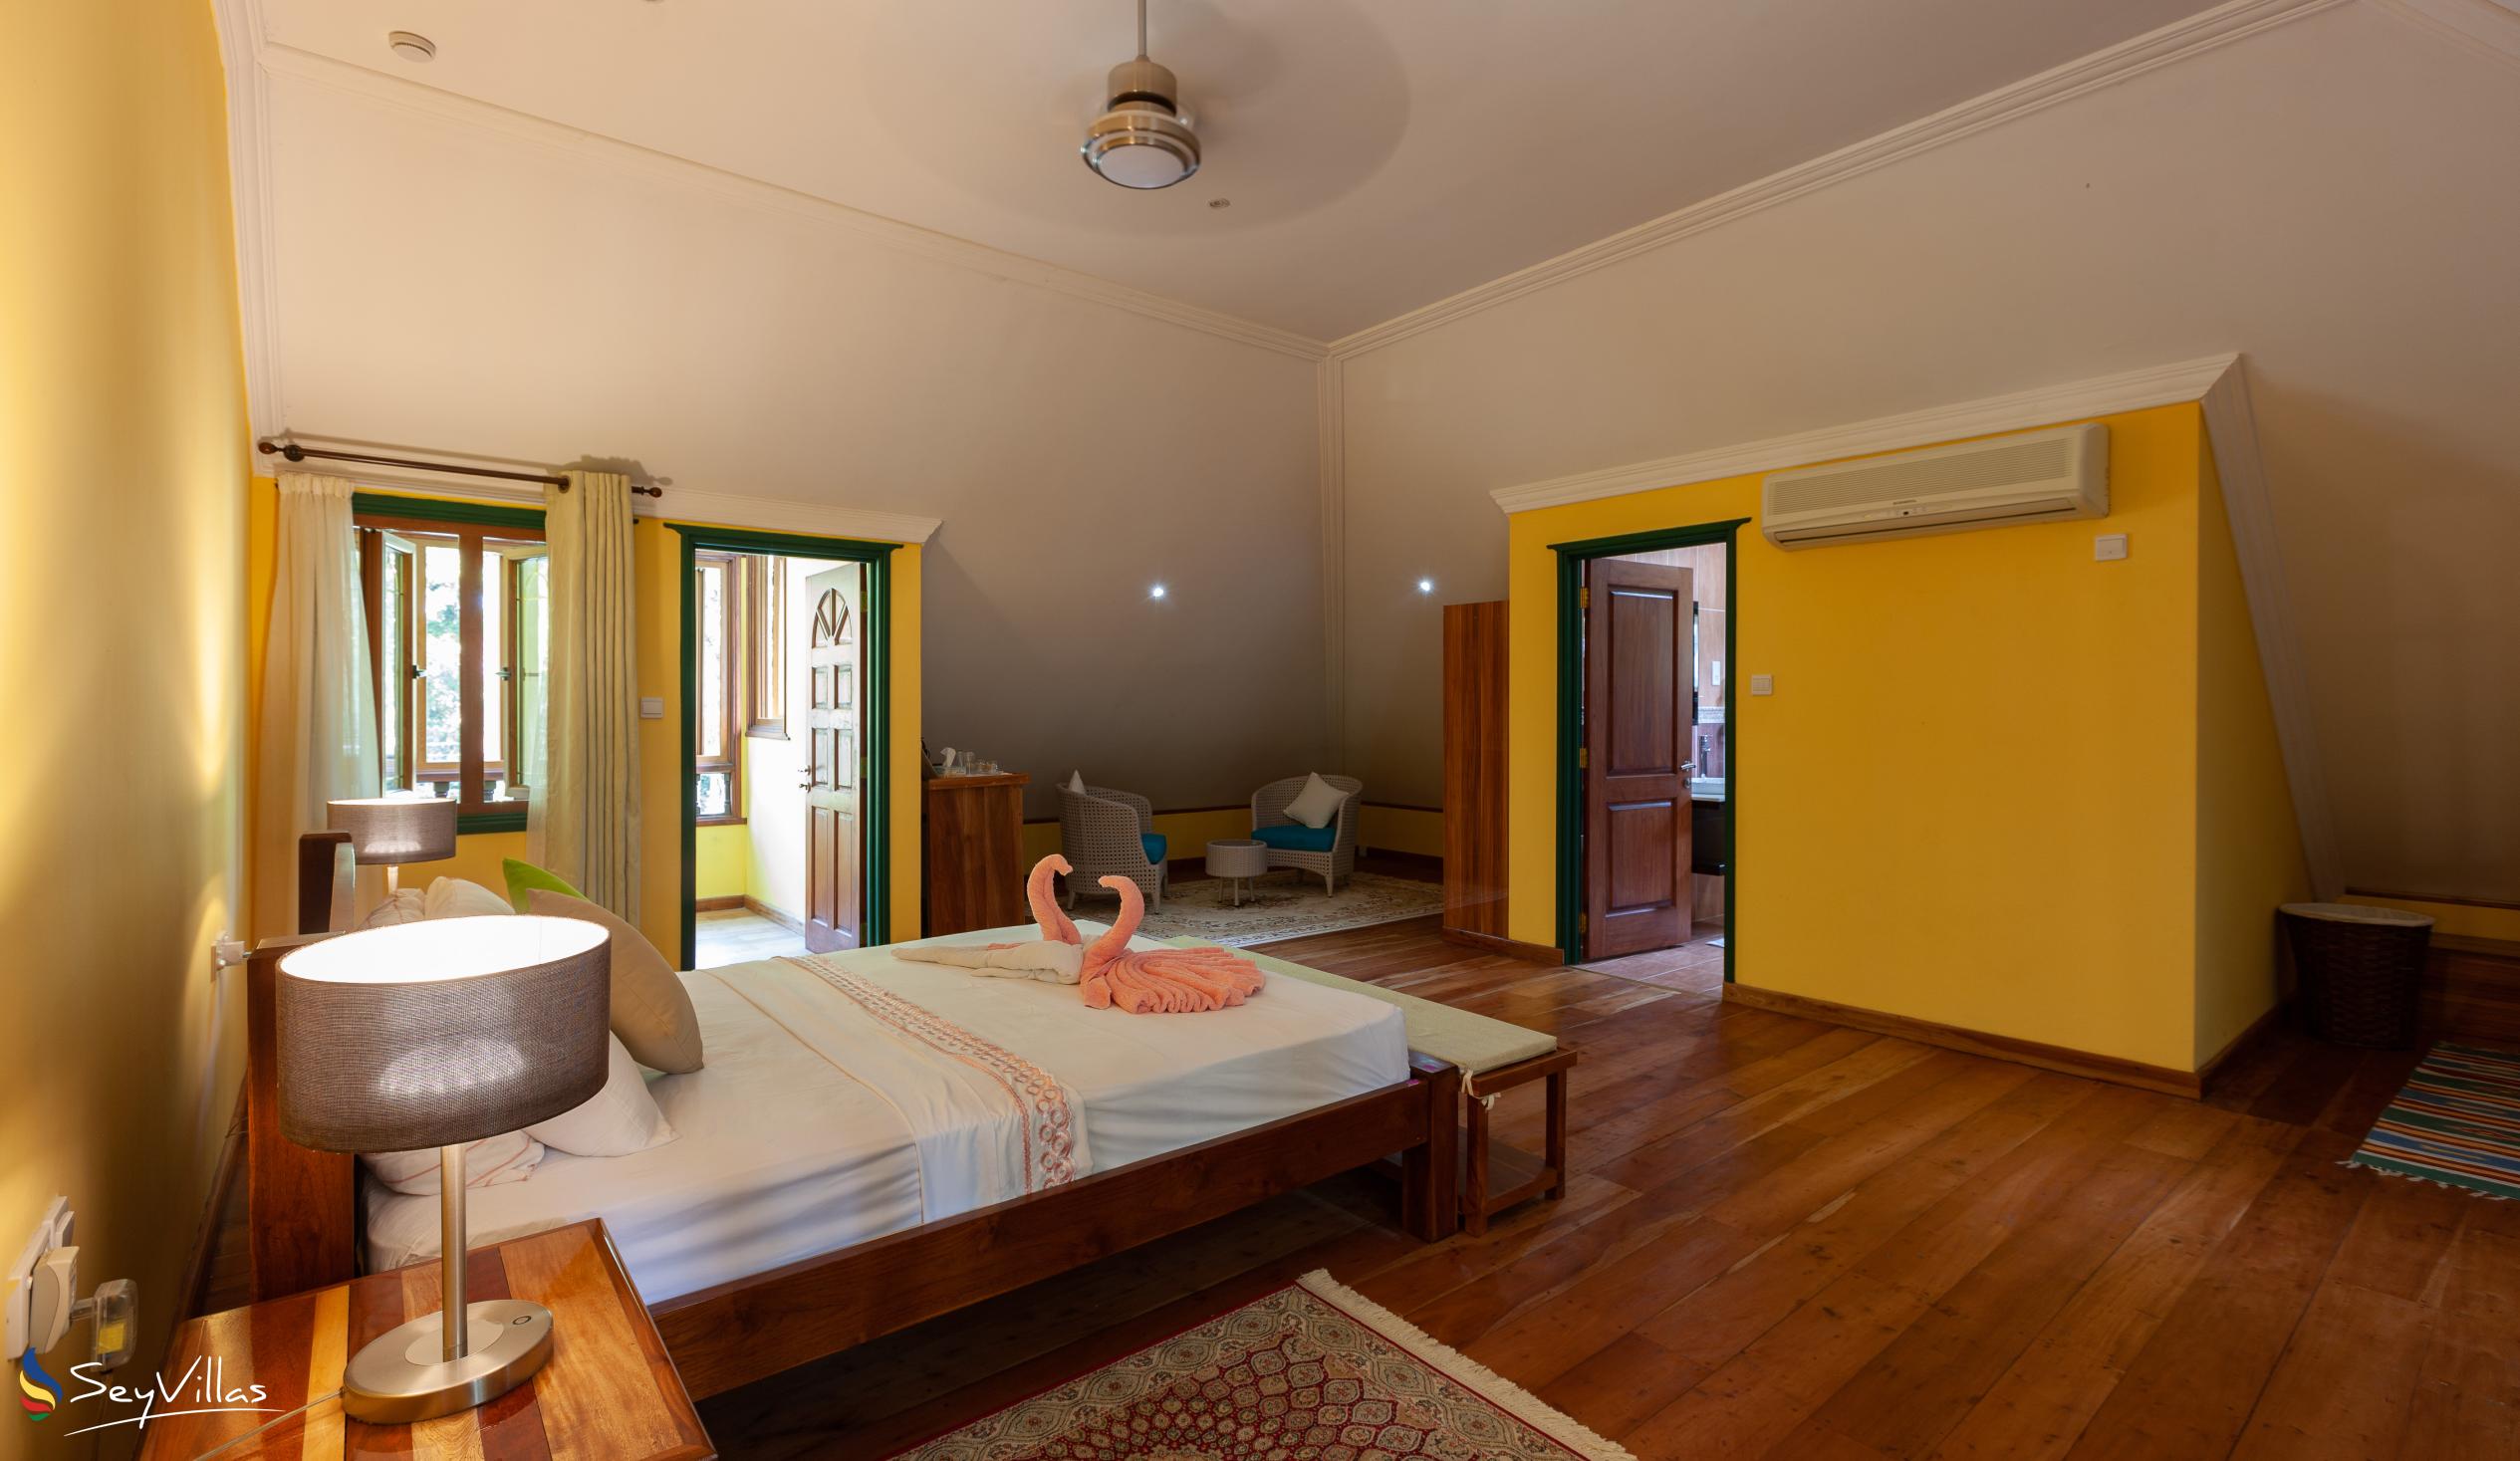 Photo 73: Pension Michel - Villa Roche Bois - Family Room - La Digue (Seychelles)